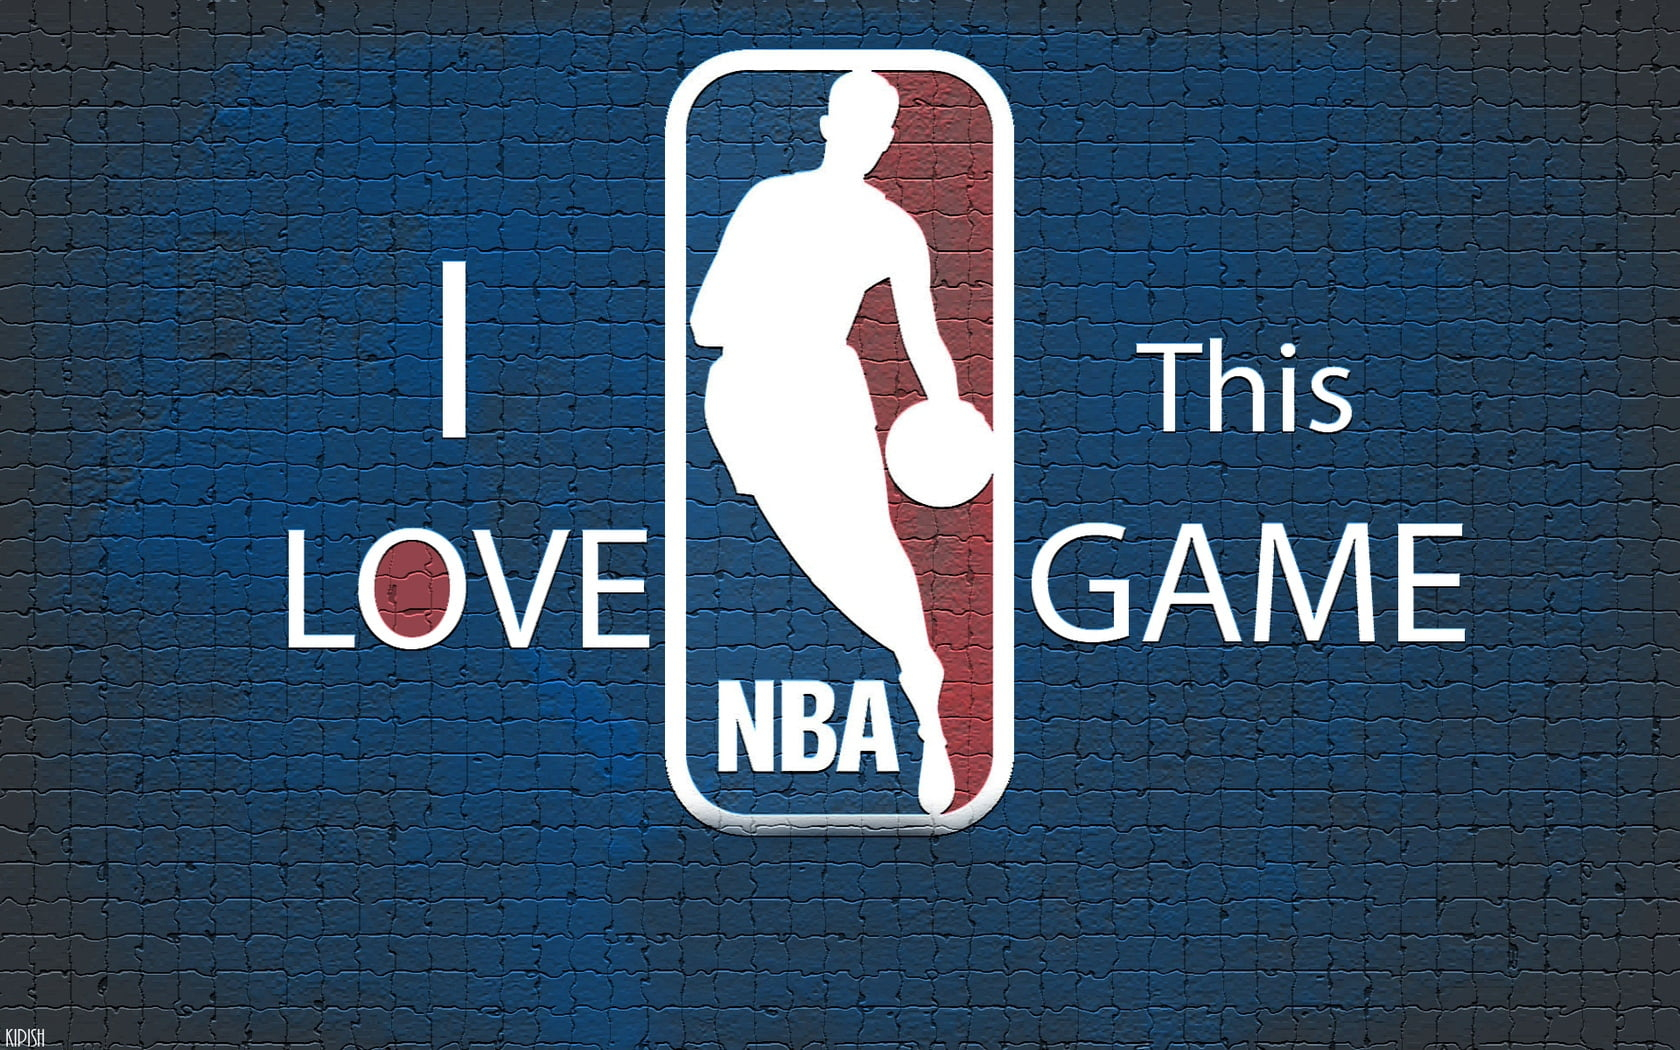 NBA logo wallpaper, basketball, communication, sign, text, western script